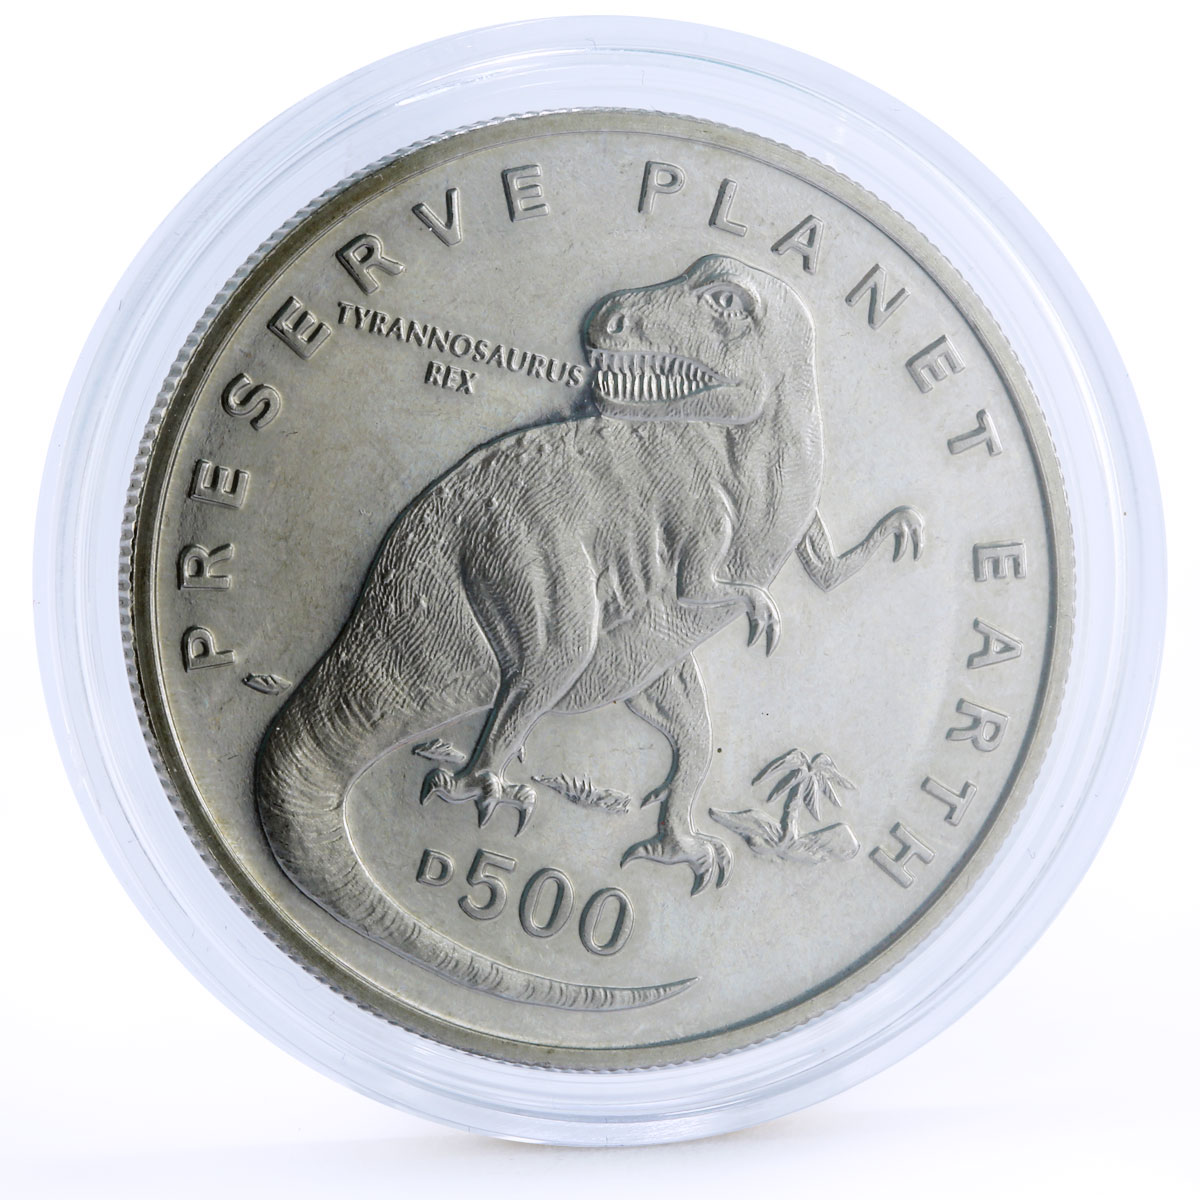 Bosnia and Herzegovina 500 dinara Ancient Animals T Rex Dinosaur CuNi coin 1993